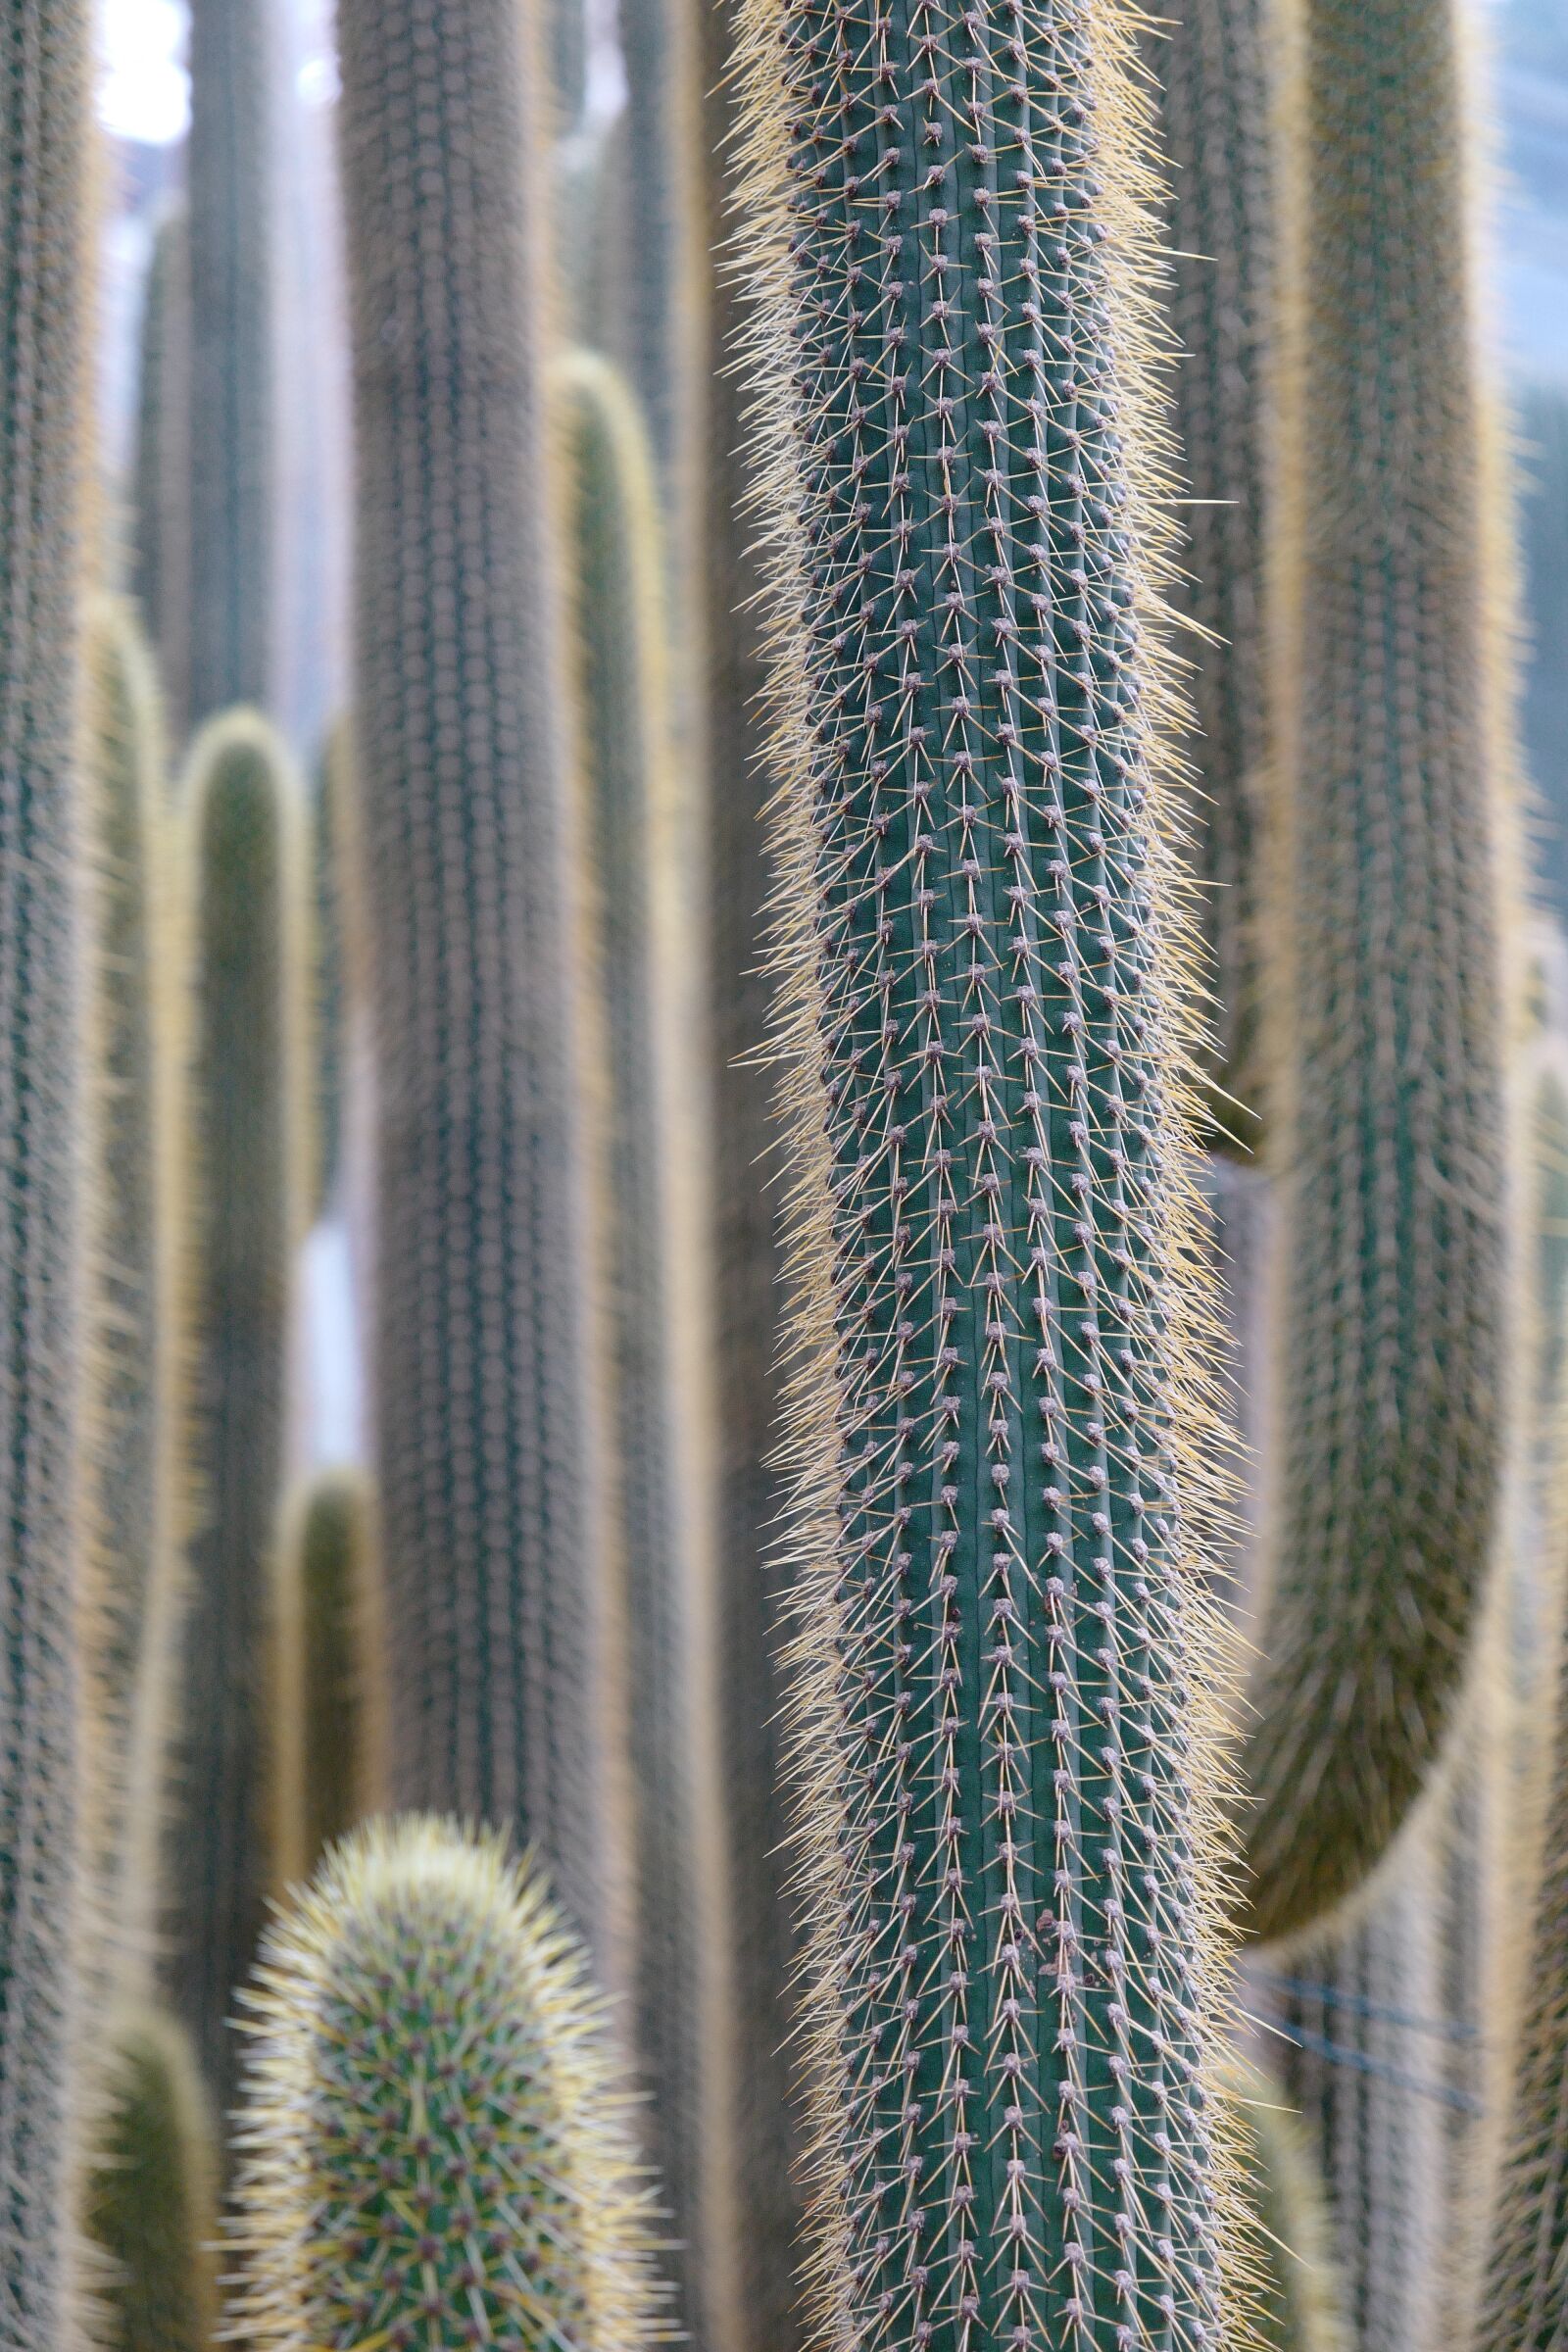 Vario-Elmar TL 1:3.5-5.6 / 18-56 ASPH. sample photo. Cactus, plant, prickly photography